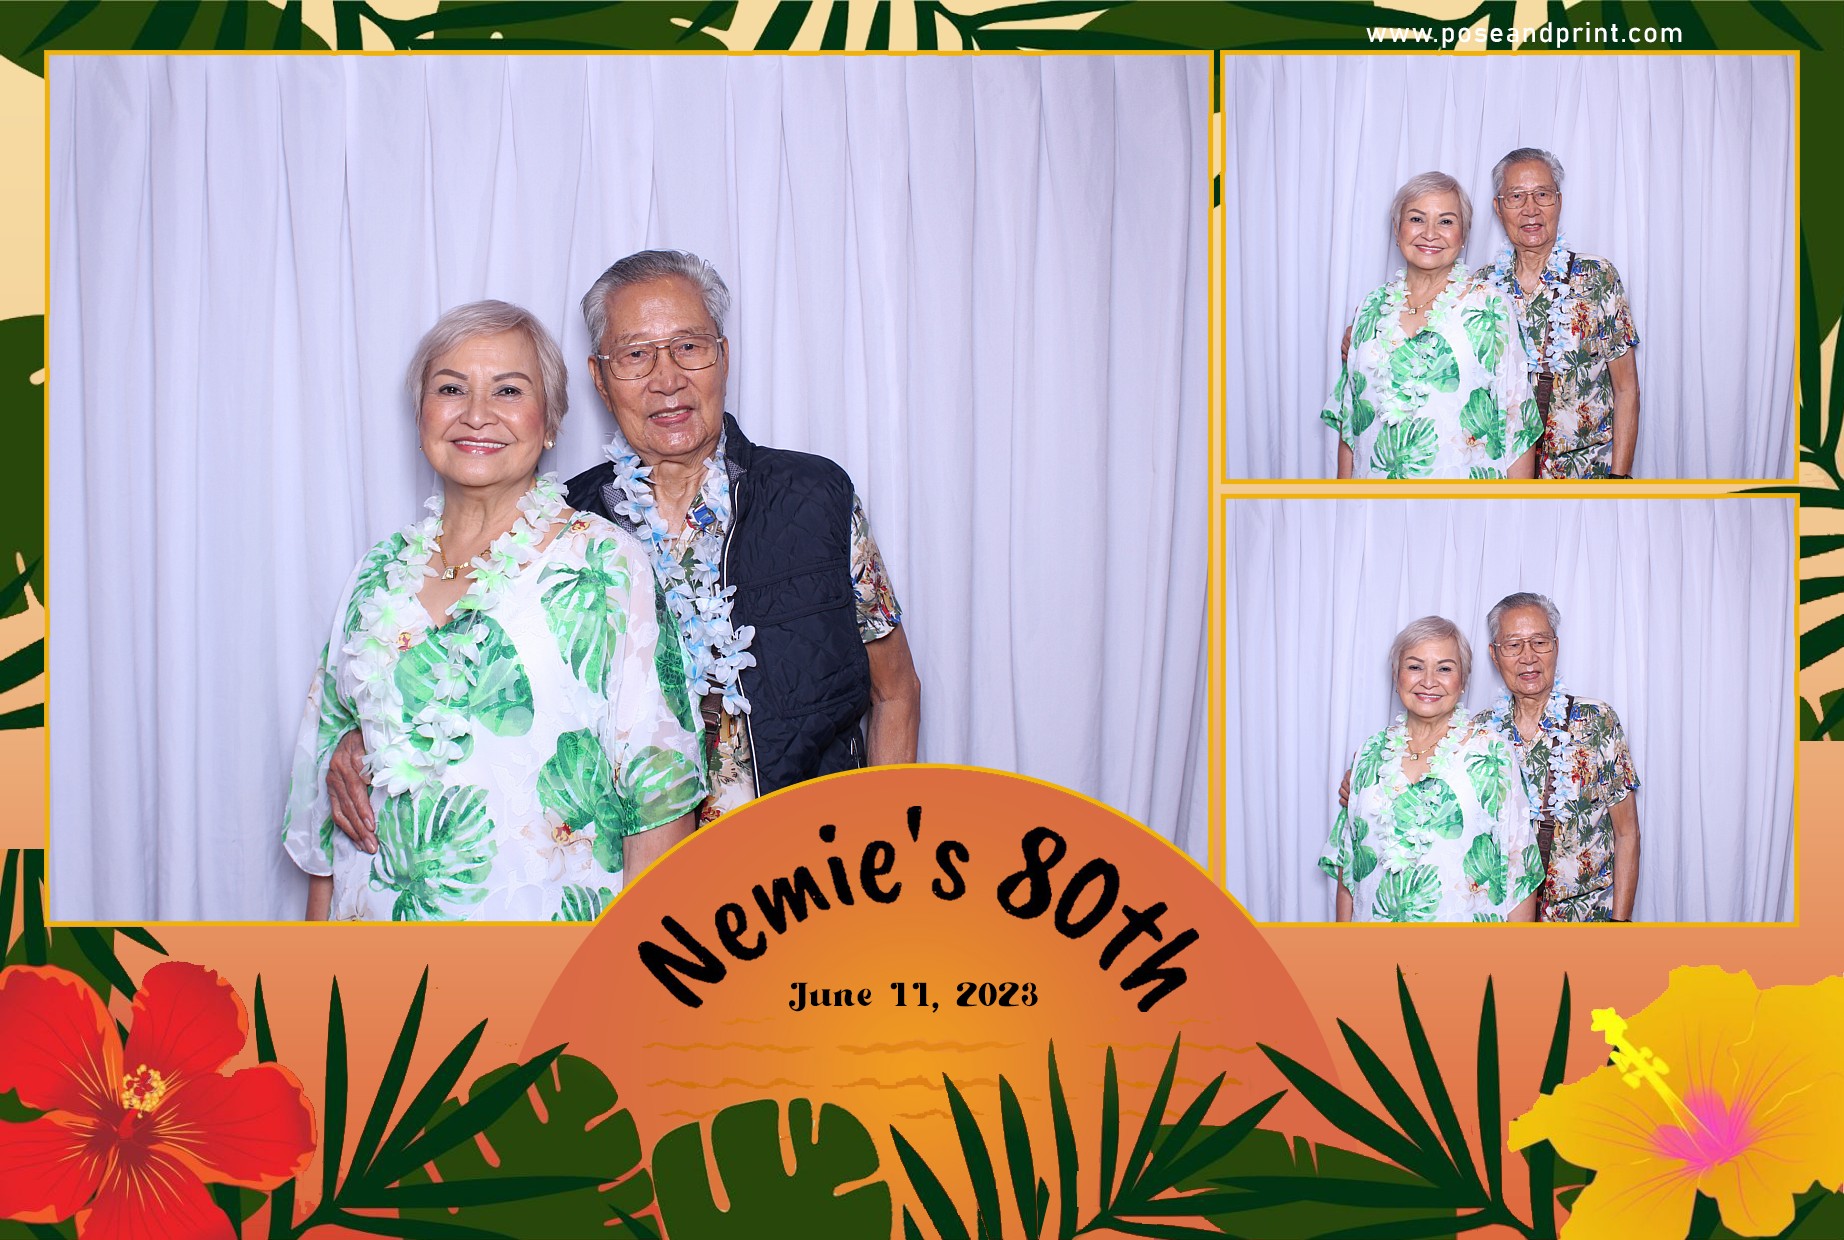 Nemie’s 80th Birthday